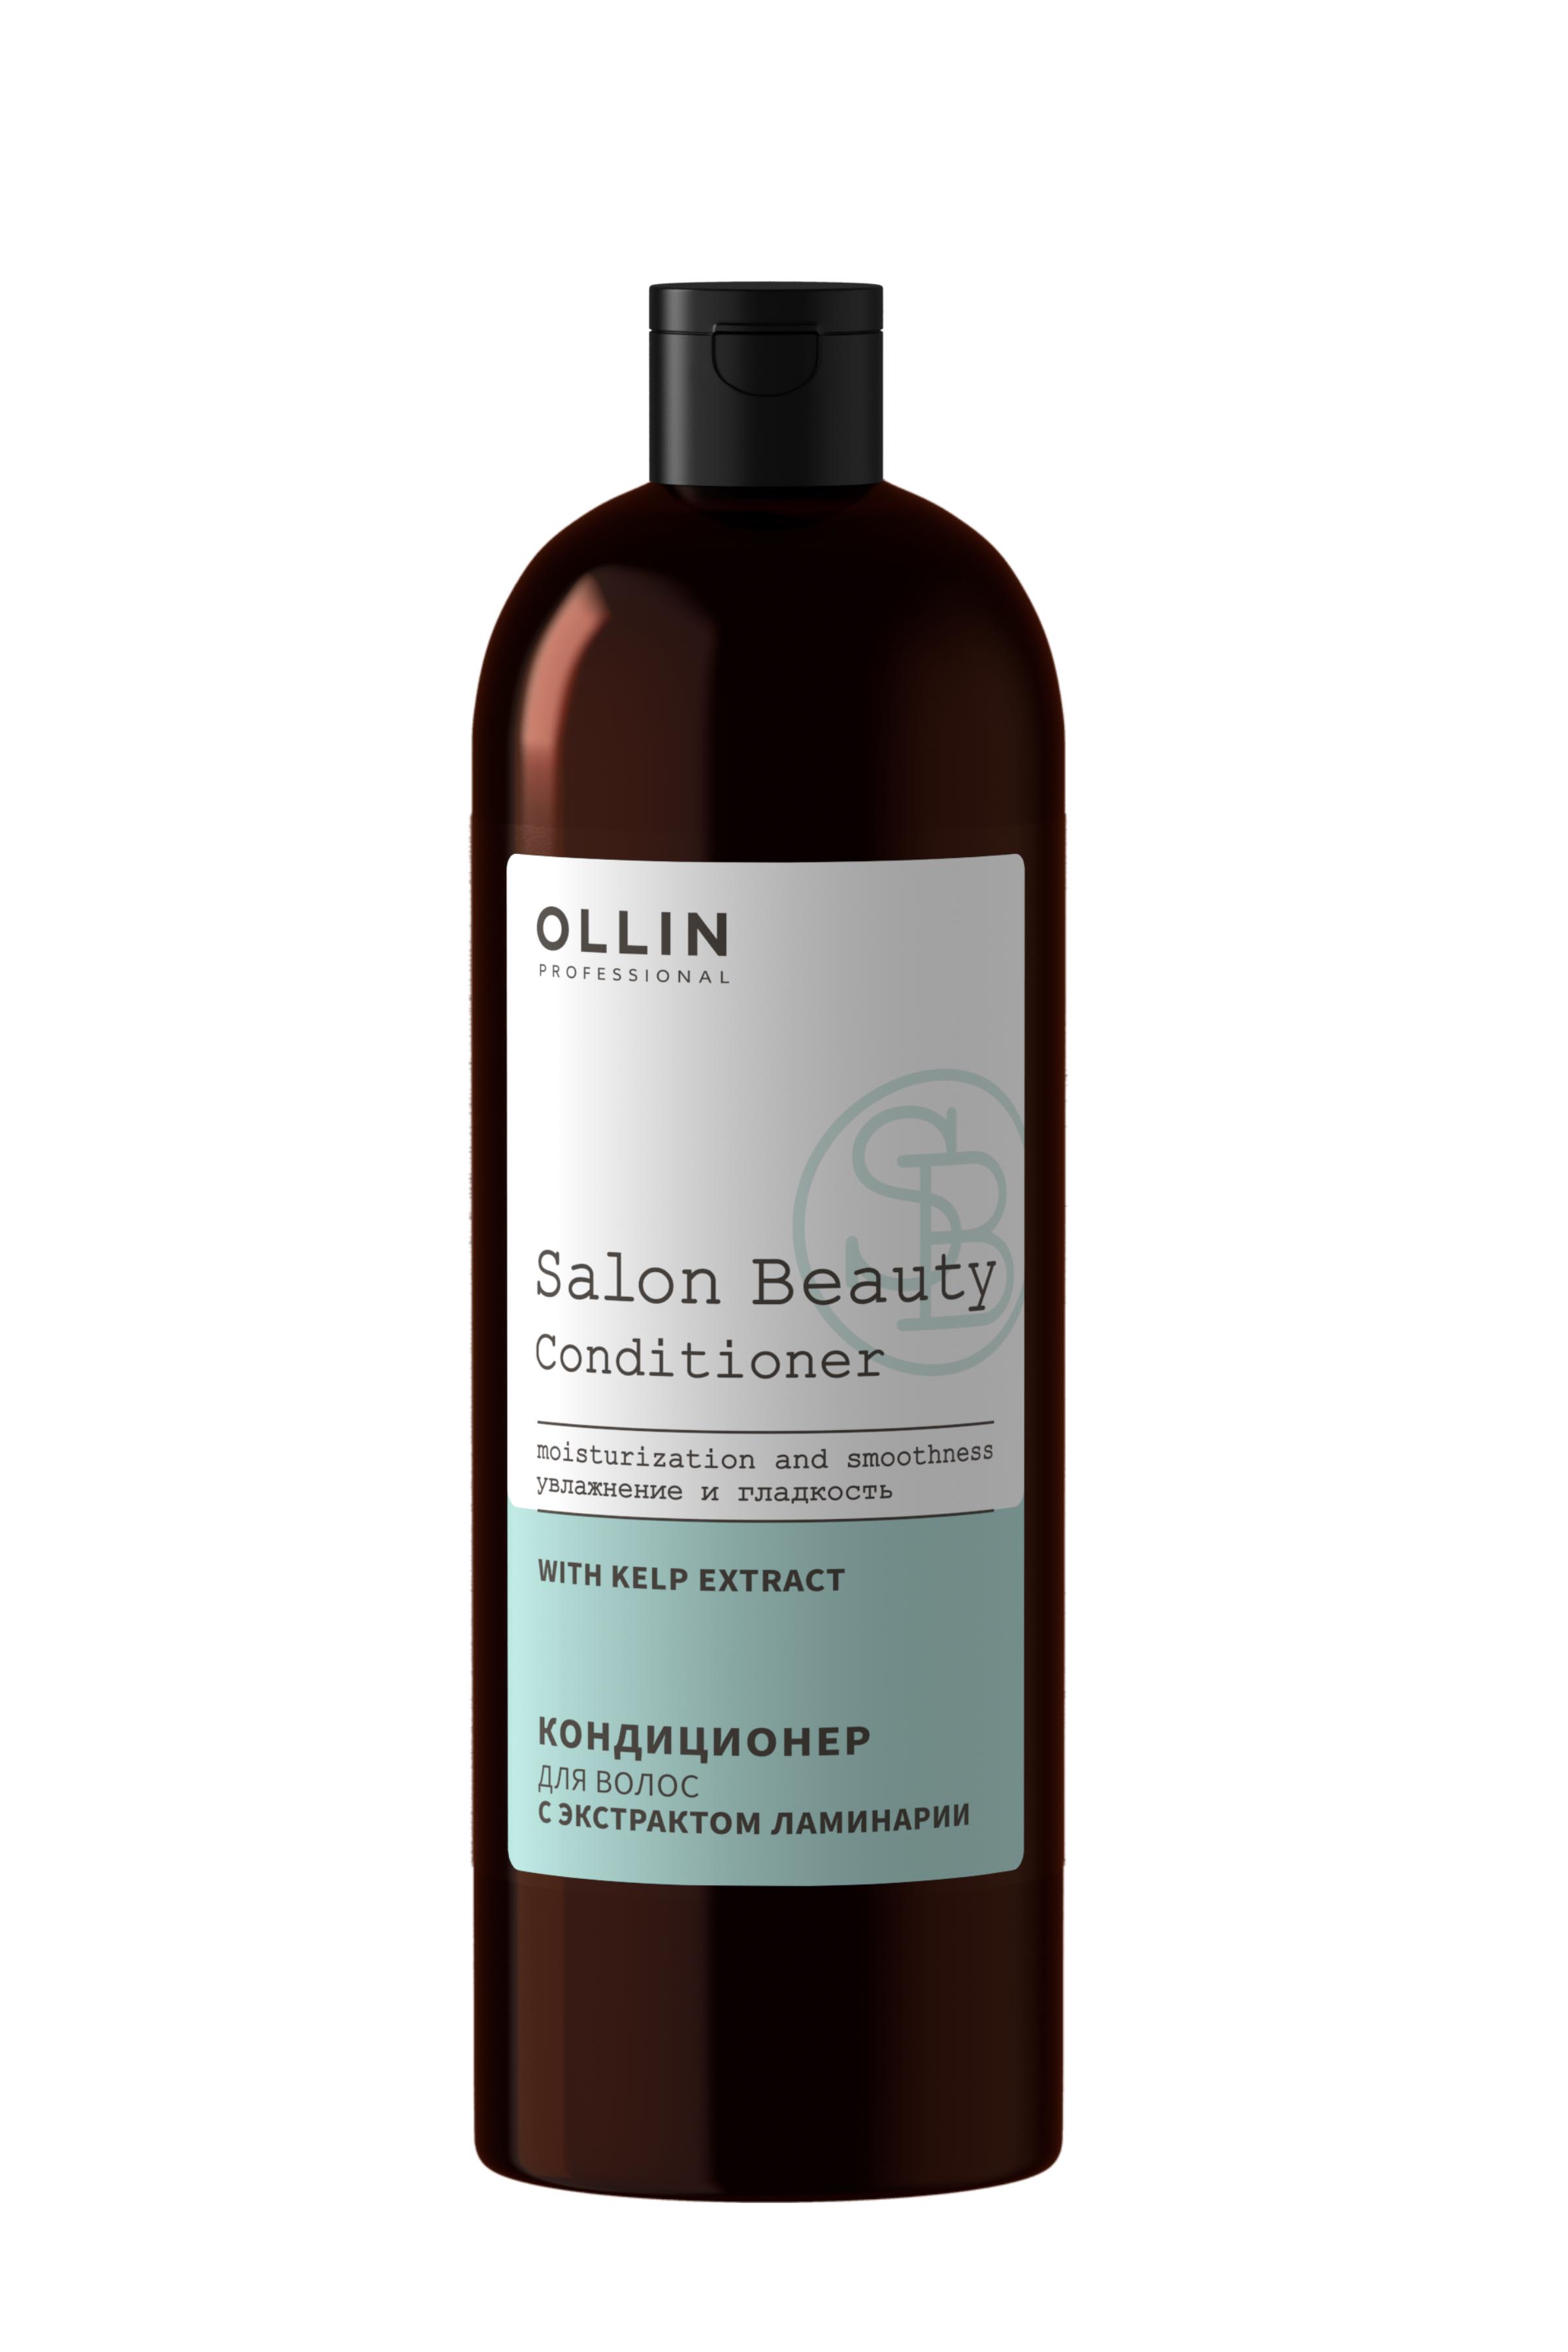 Кондиционер для волос с экстрактом ламинарии OLLIN SALON BEAUTY, 1000мл